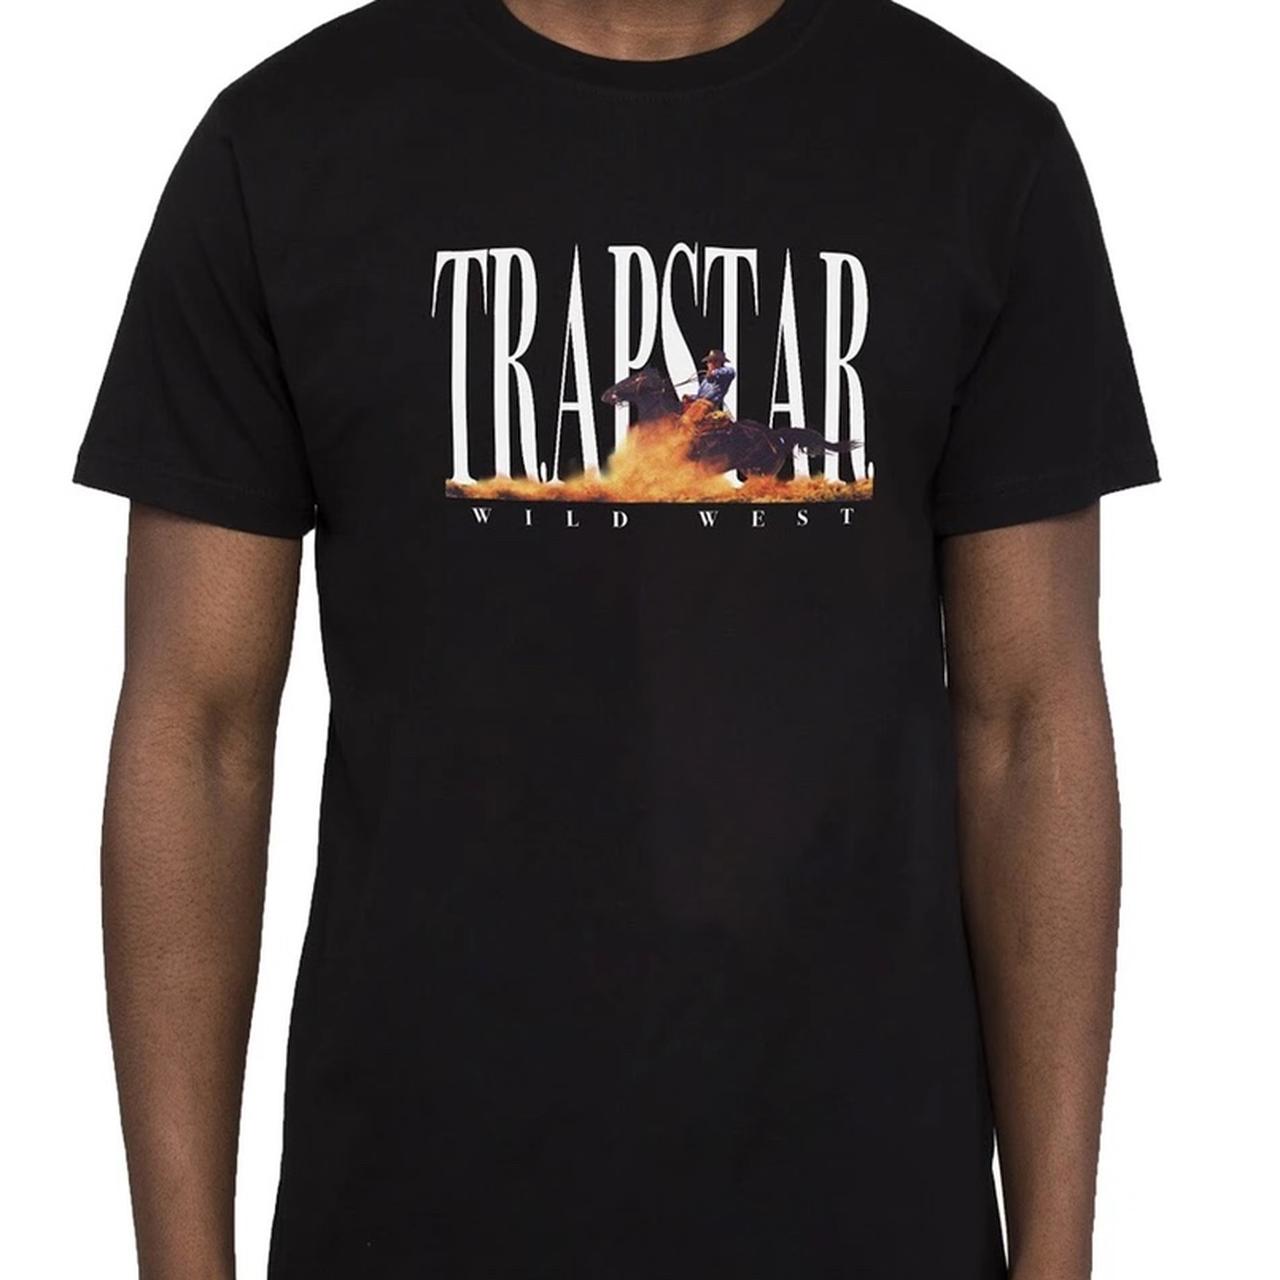 Trapstar Wild West T-Shirt *BRAND NEW* Size: Medium - Depop